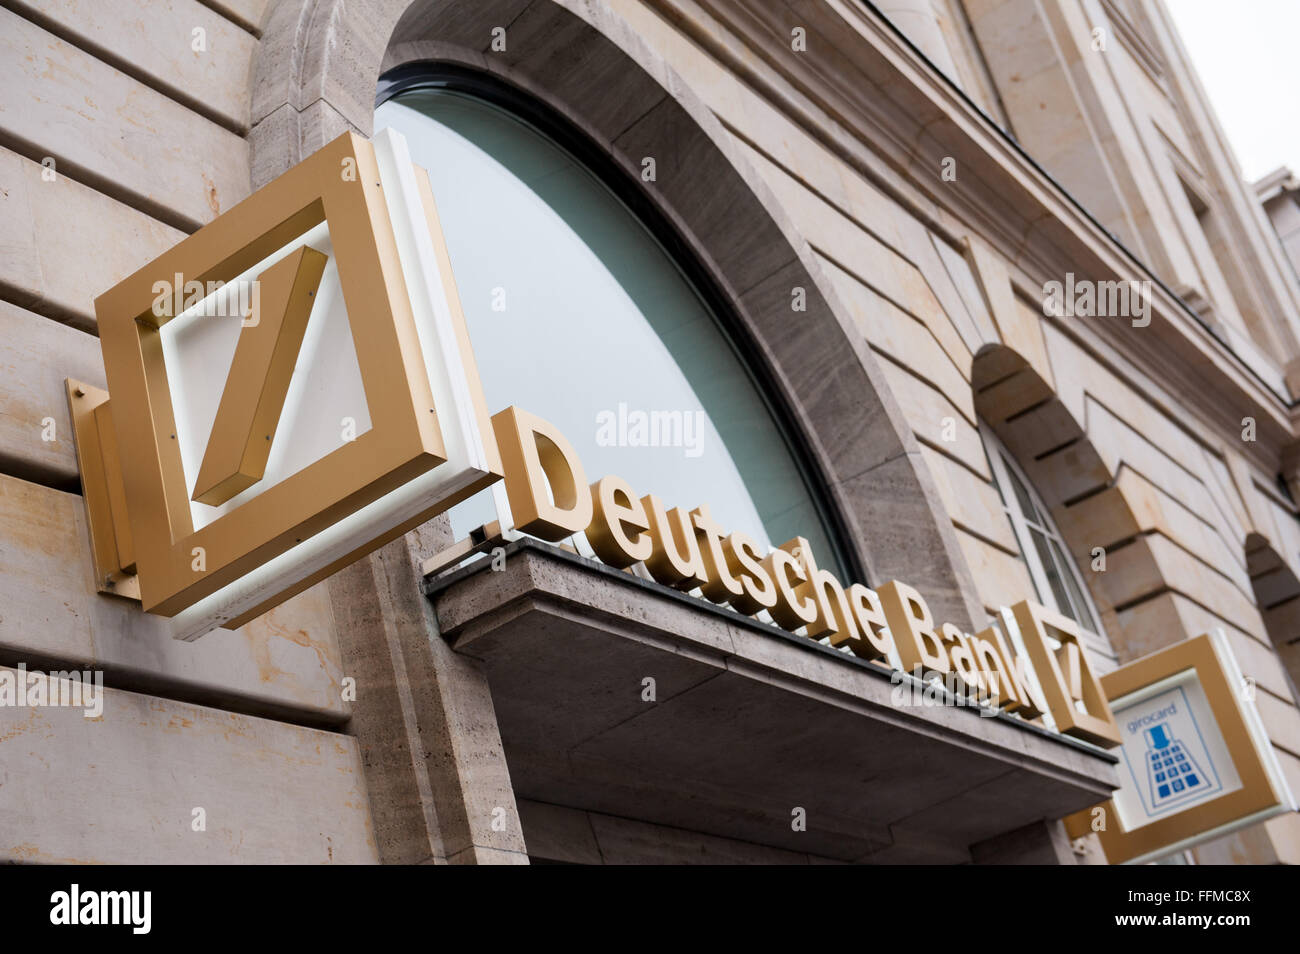 Pictrure of the entrance of Deutsche Bank in Frankfurt, taken on 10/02/16 Stock Photo